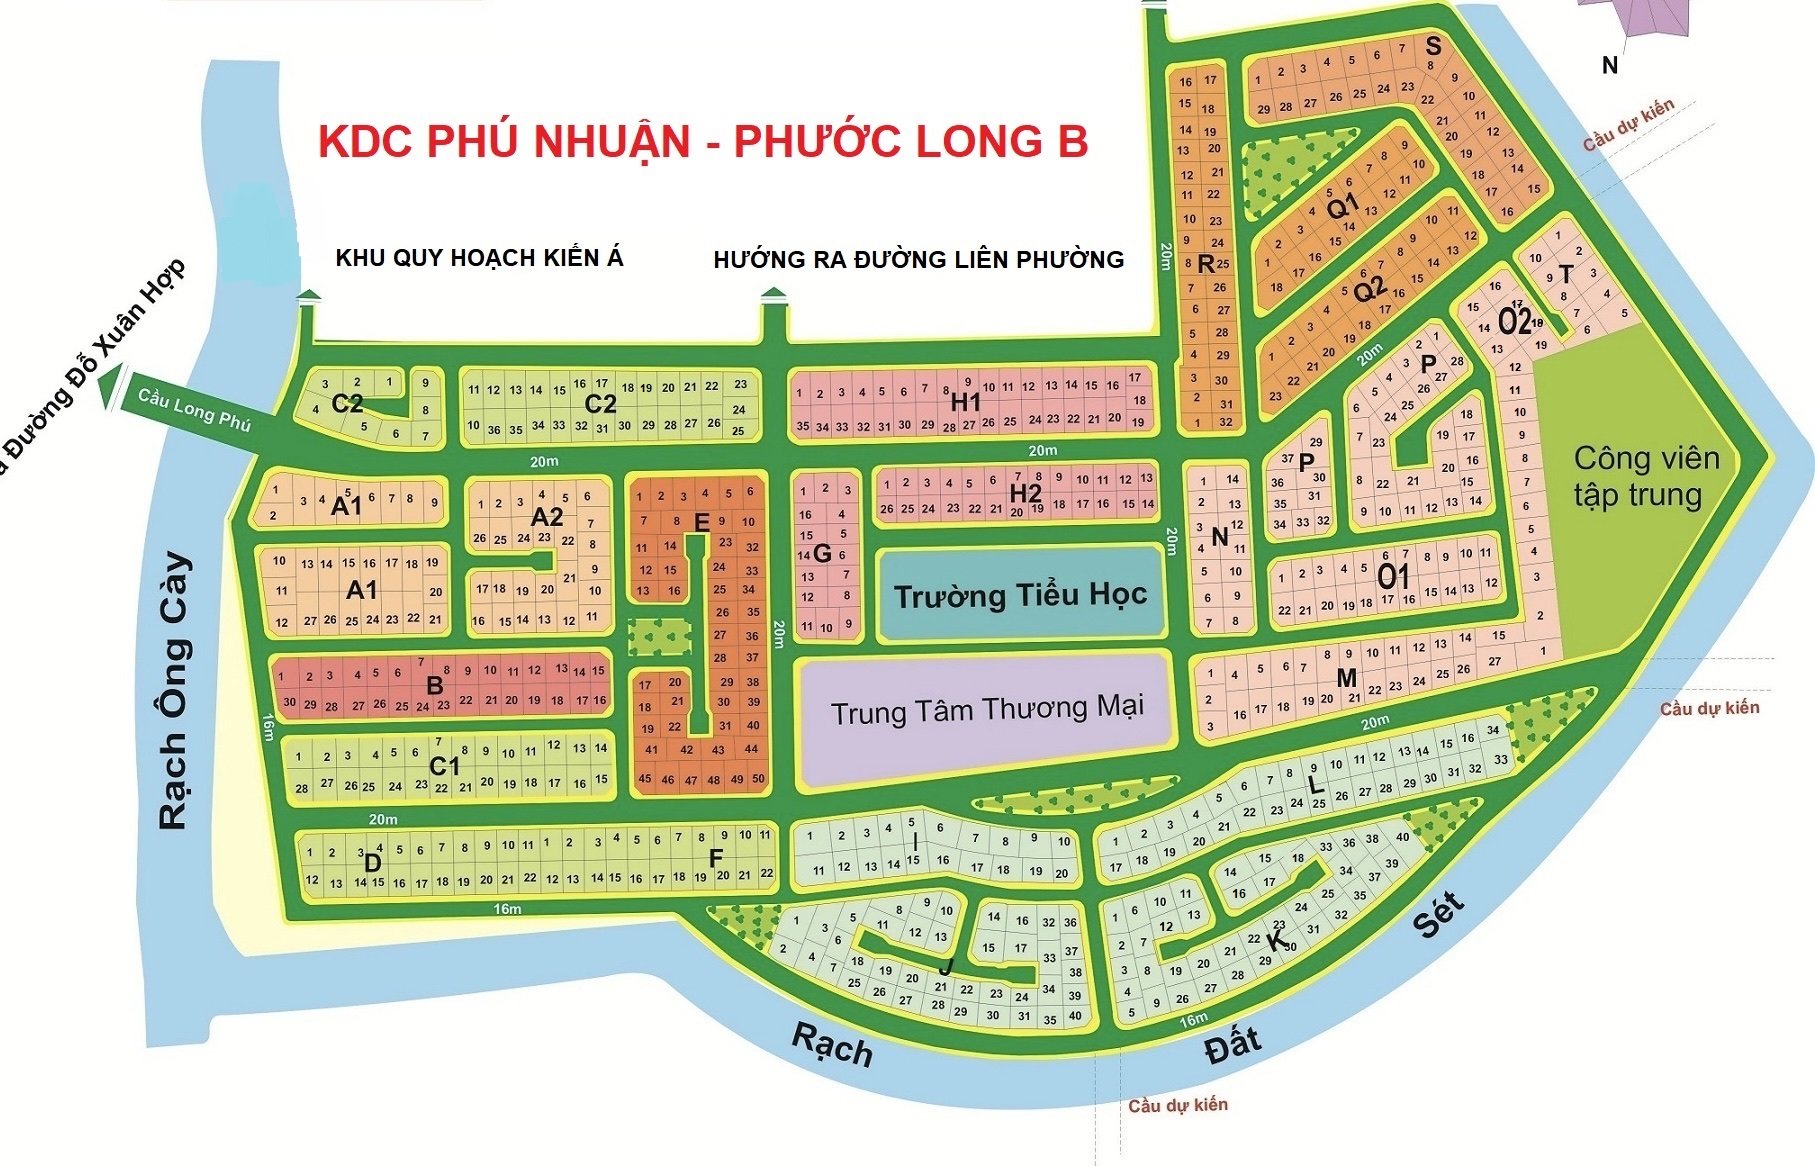 Chủ cần bán đất nền KDC Phú Nhuận, DT 15mx18m, giá 70tr/m2, đón nắng, phường PLB, TP.Thủ đức